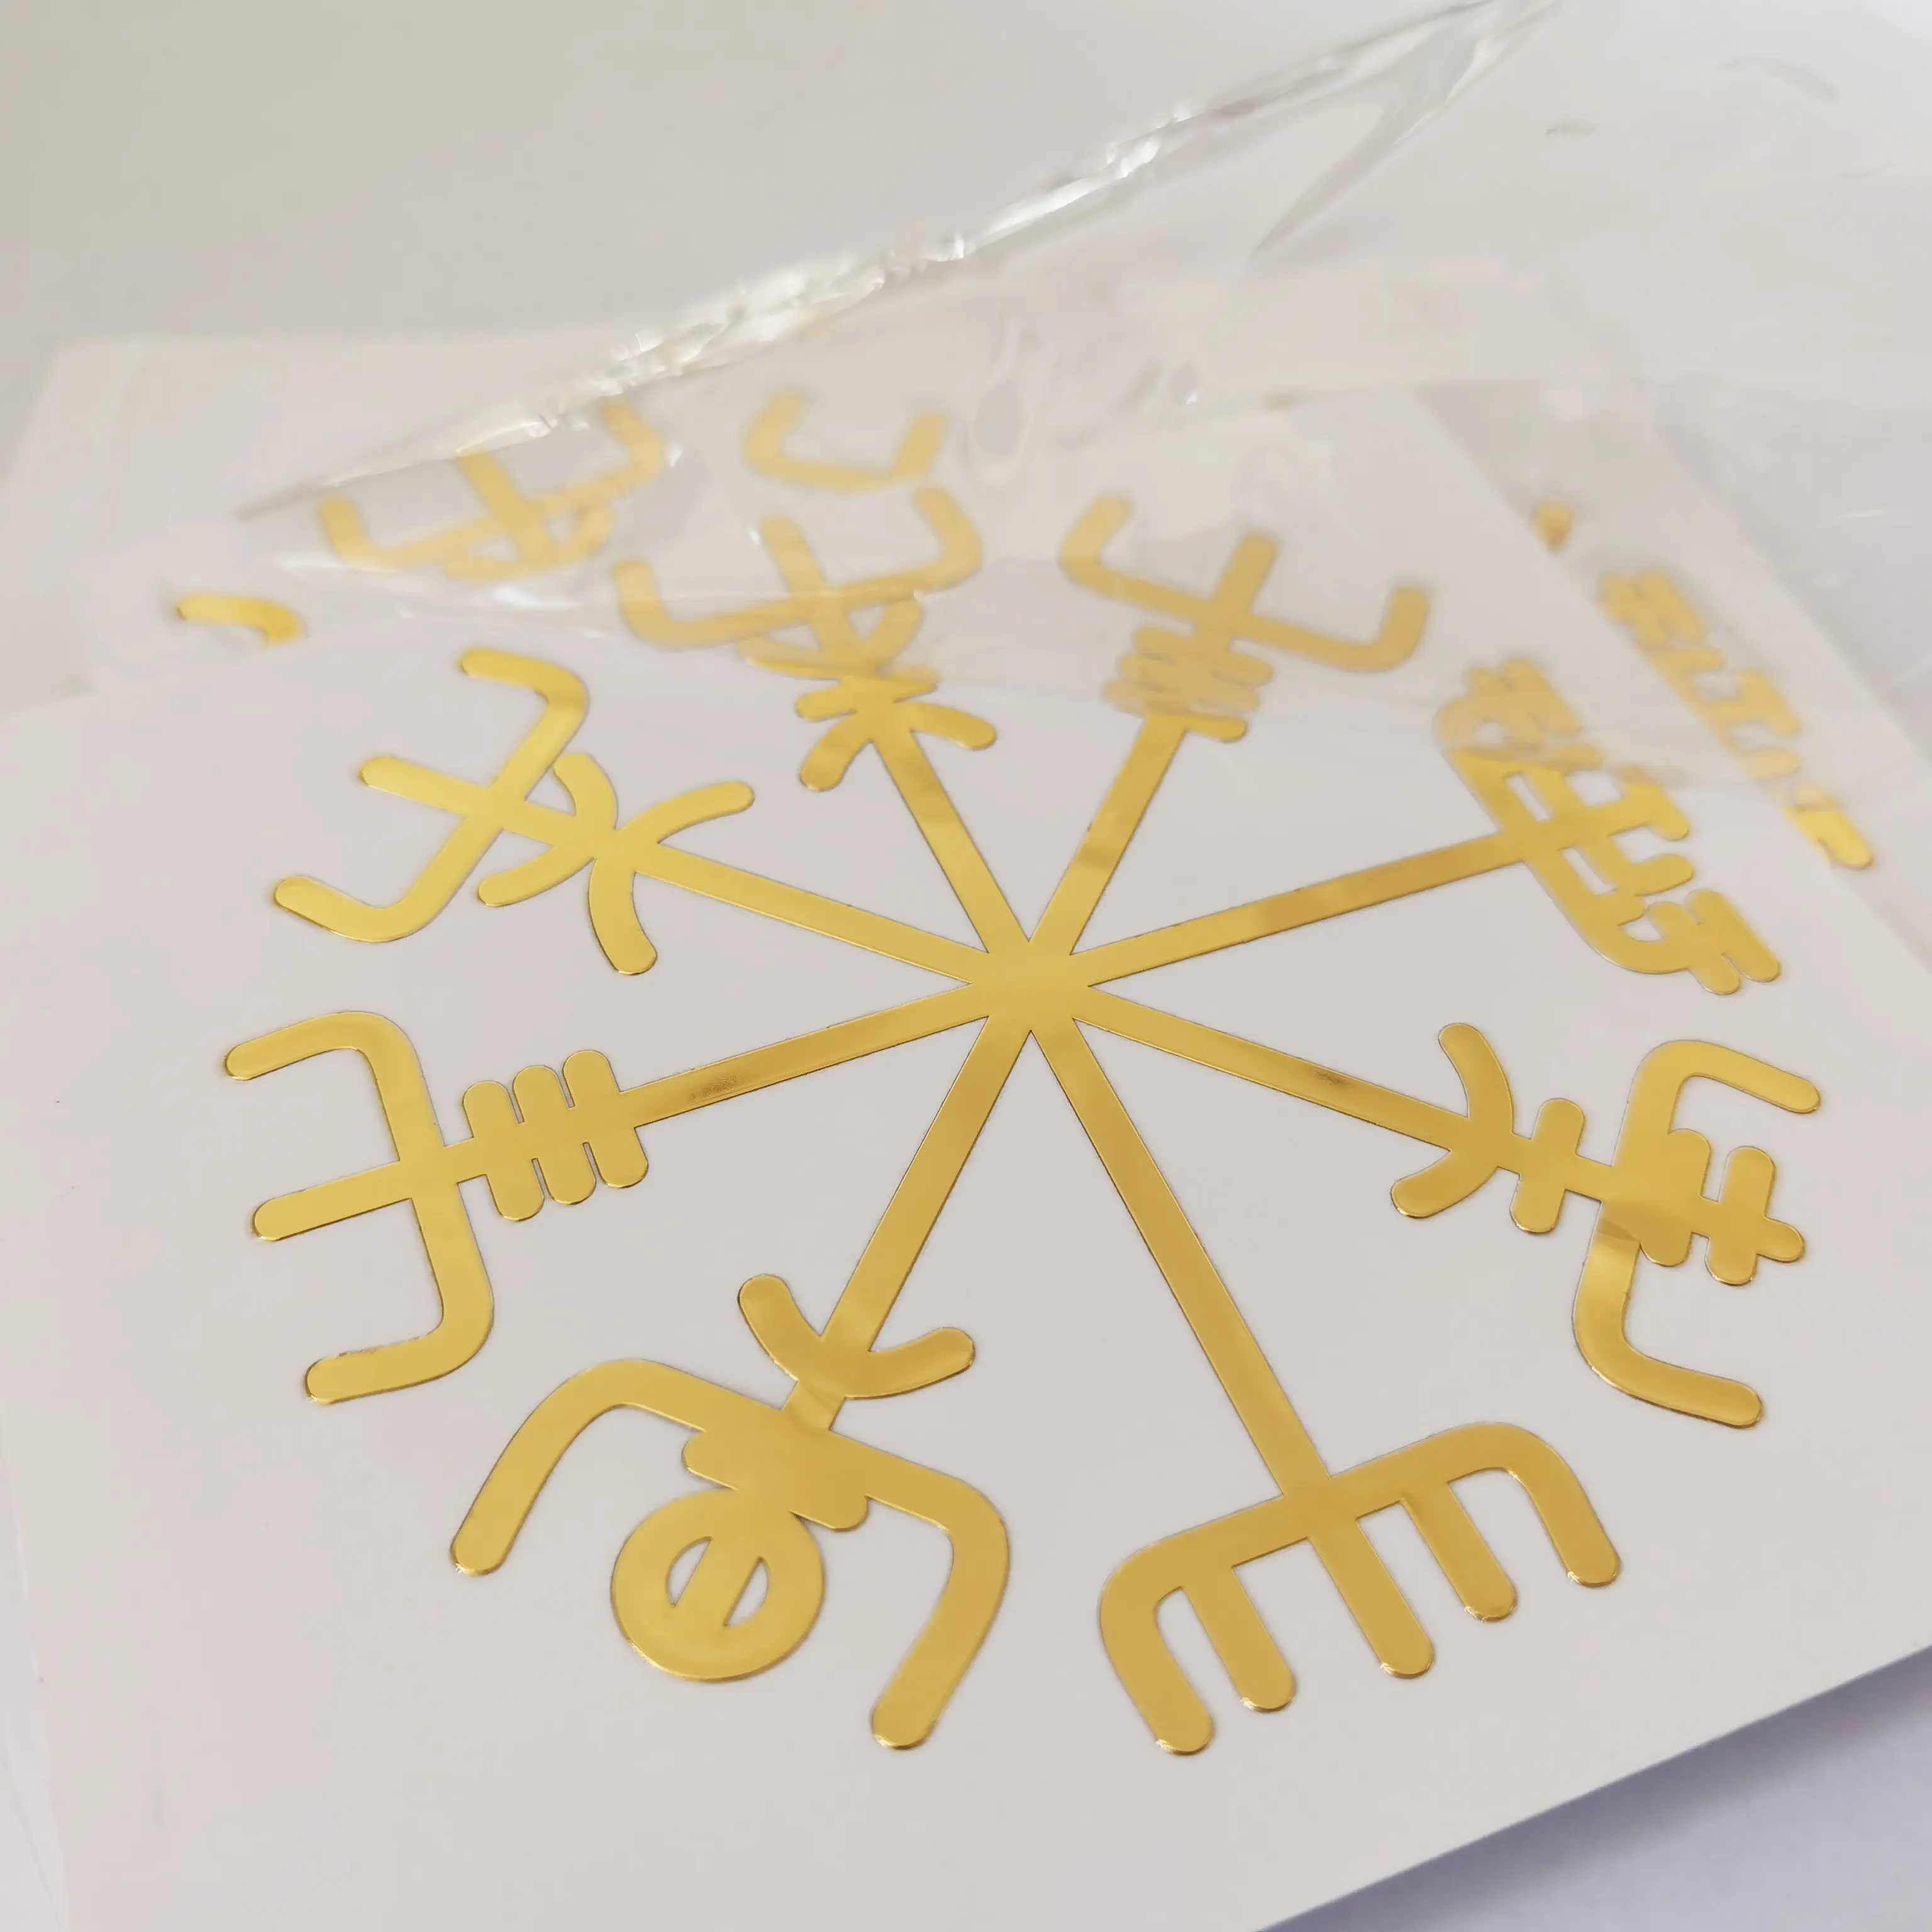 Custom Metal Embossed Pure Adhesive Waterproof Gold Nickel Sticker For Packaging